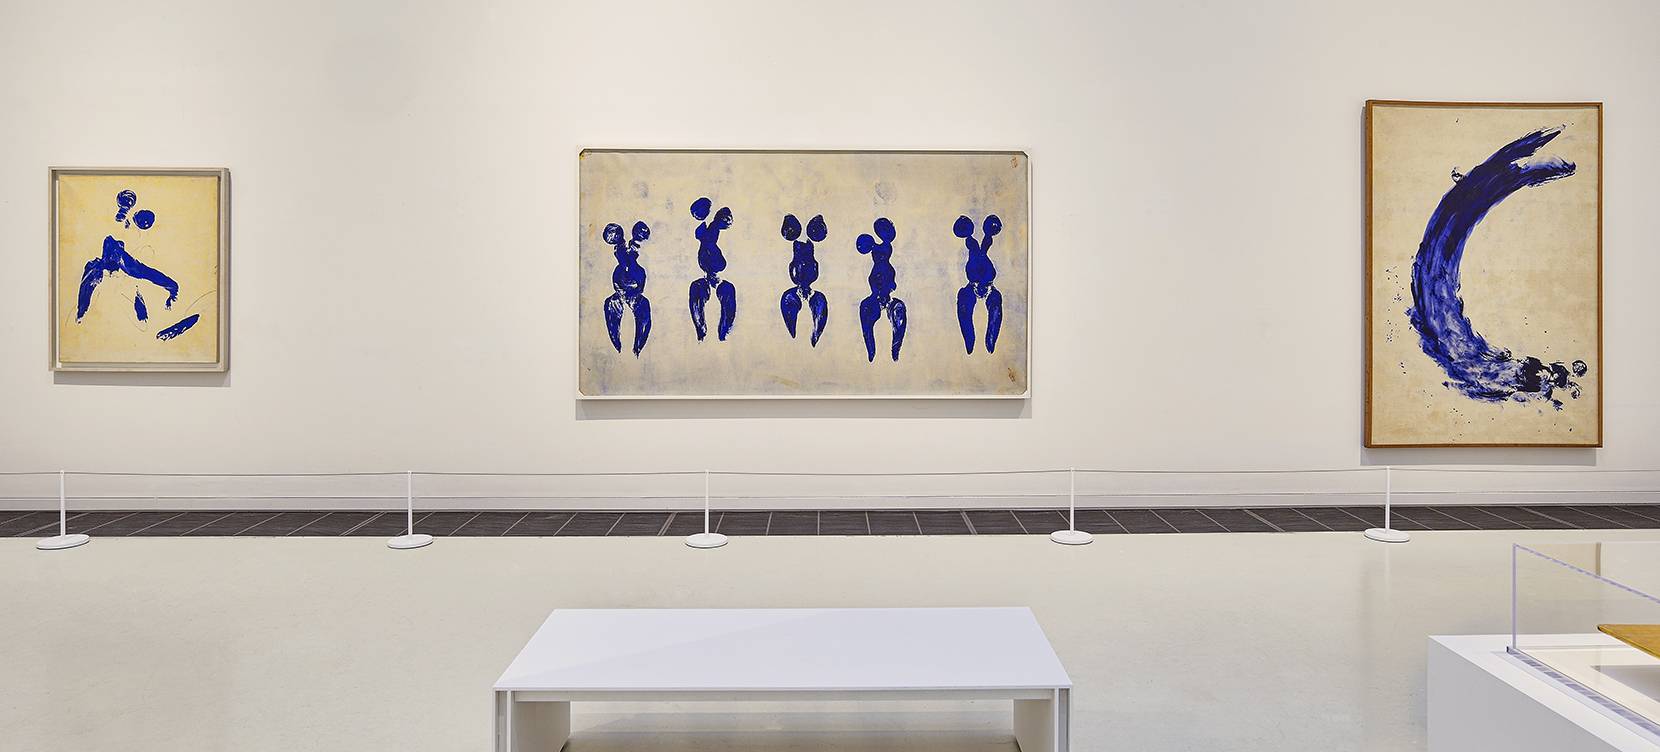 Vue de l’exposition “Yves Klein, des cris bleus” au musée Soulages, Rodez, avec trois œuvres de la série “Anthropométries de l’époque bleue” (1960). © Musée Soulages, Rodez/Photo Thierry Estadieu